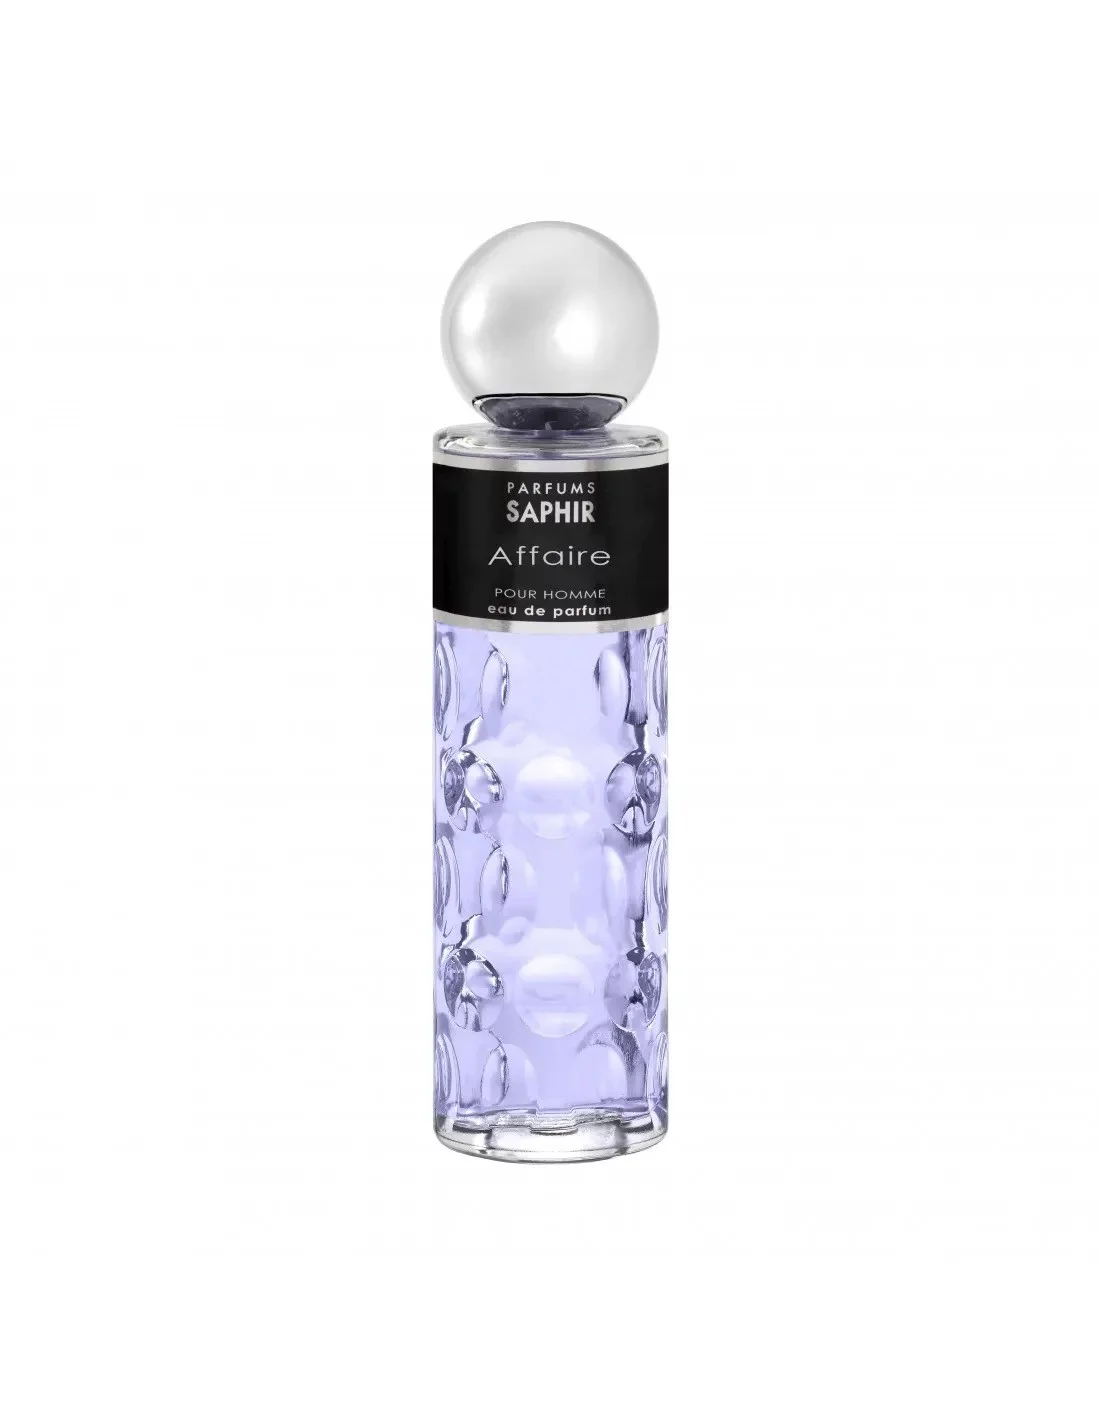 Parfums Saphir - Eau de Parfum 200 ml - affaire